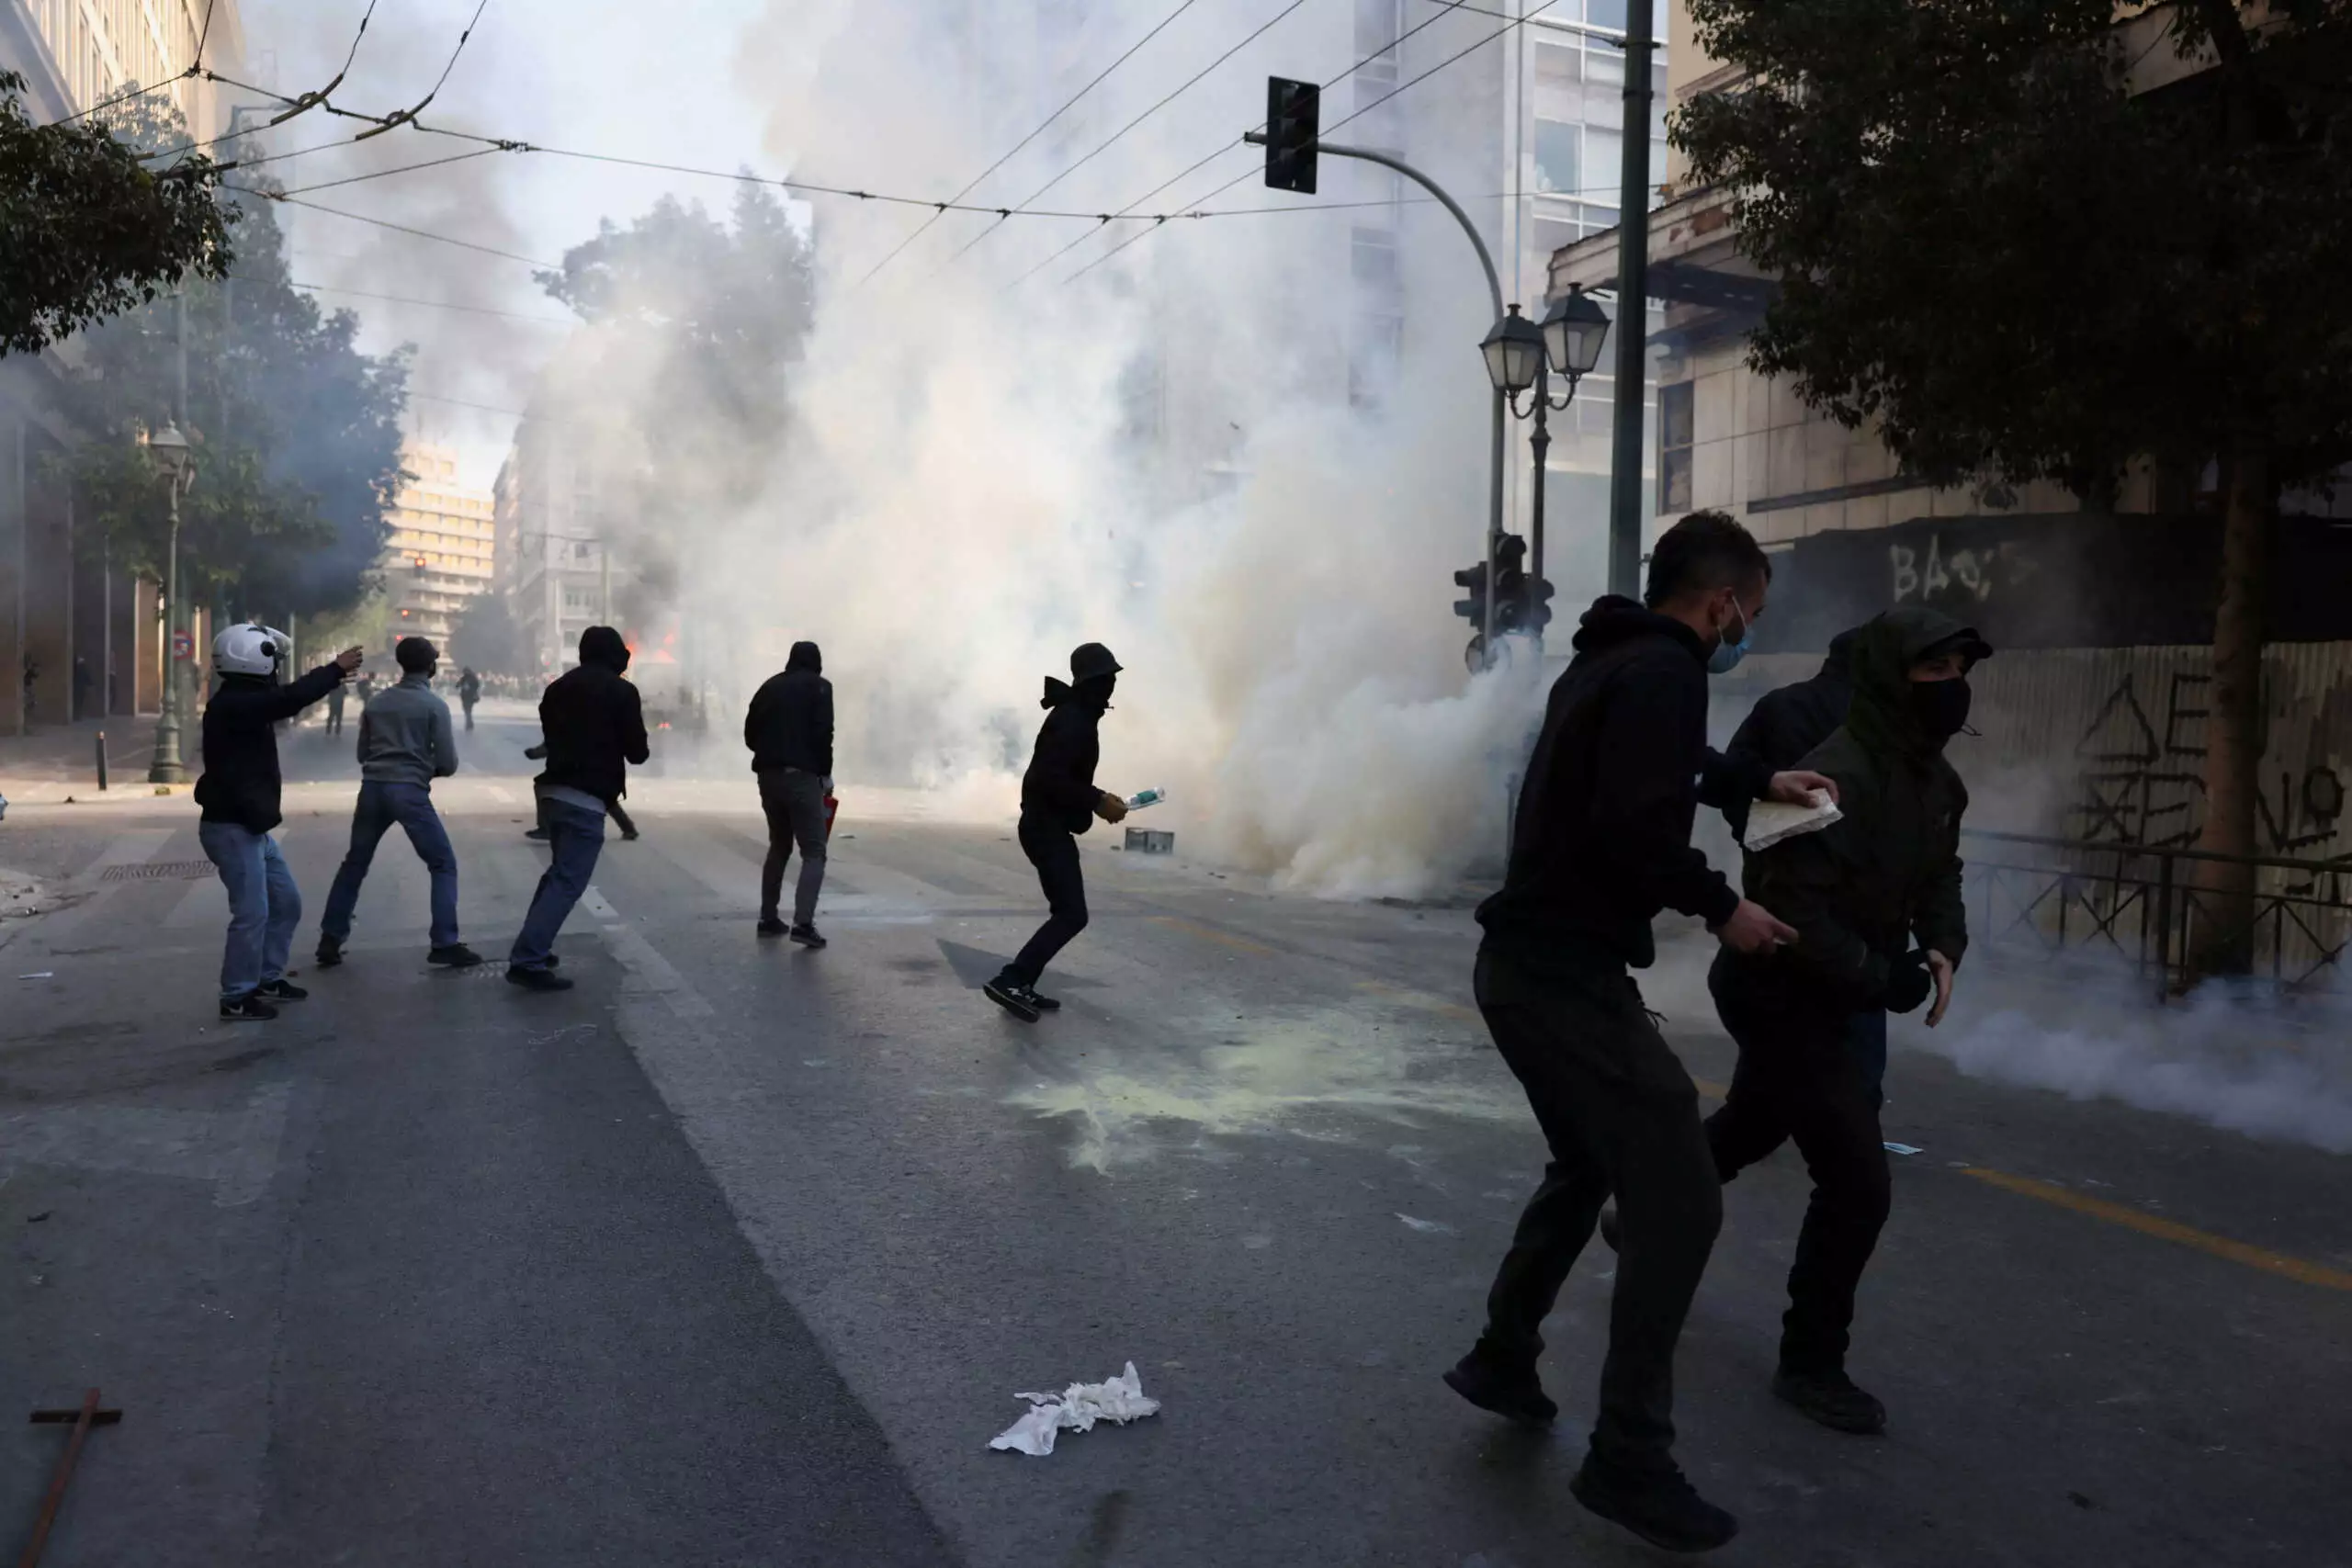 Επεισόδια έξω από την Νομική Αθηνών με μολότοφ και φωτιές σε κάδους (φώτο)